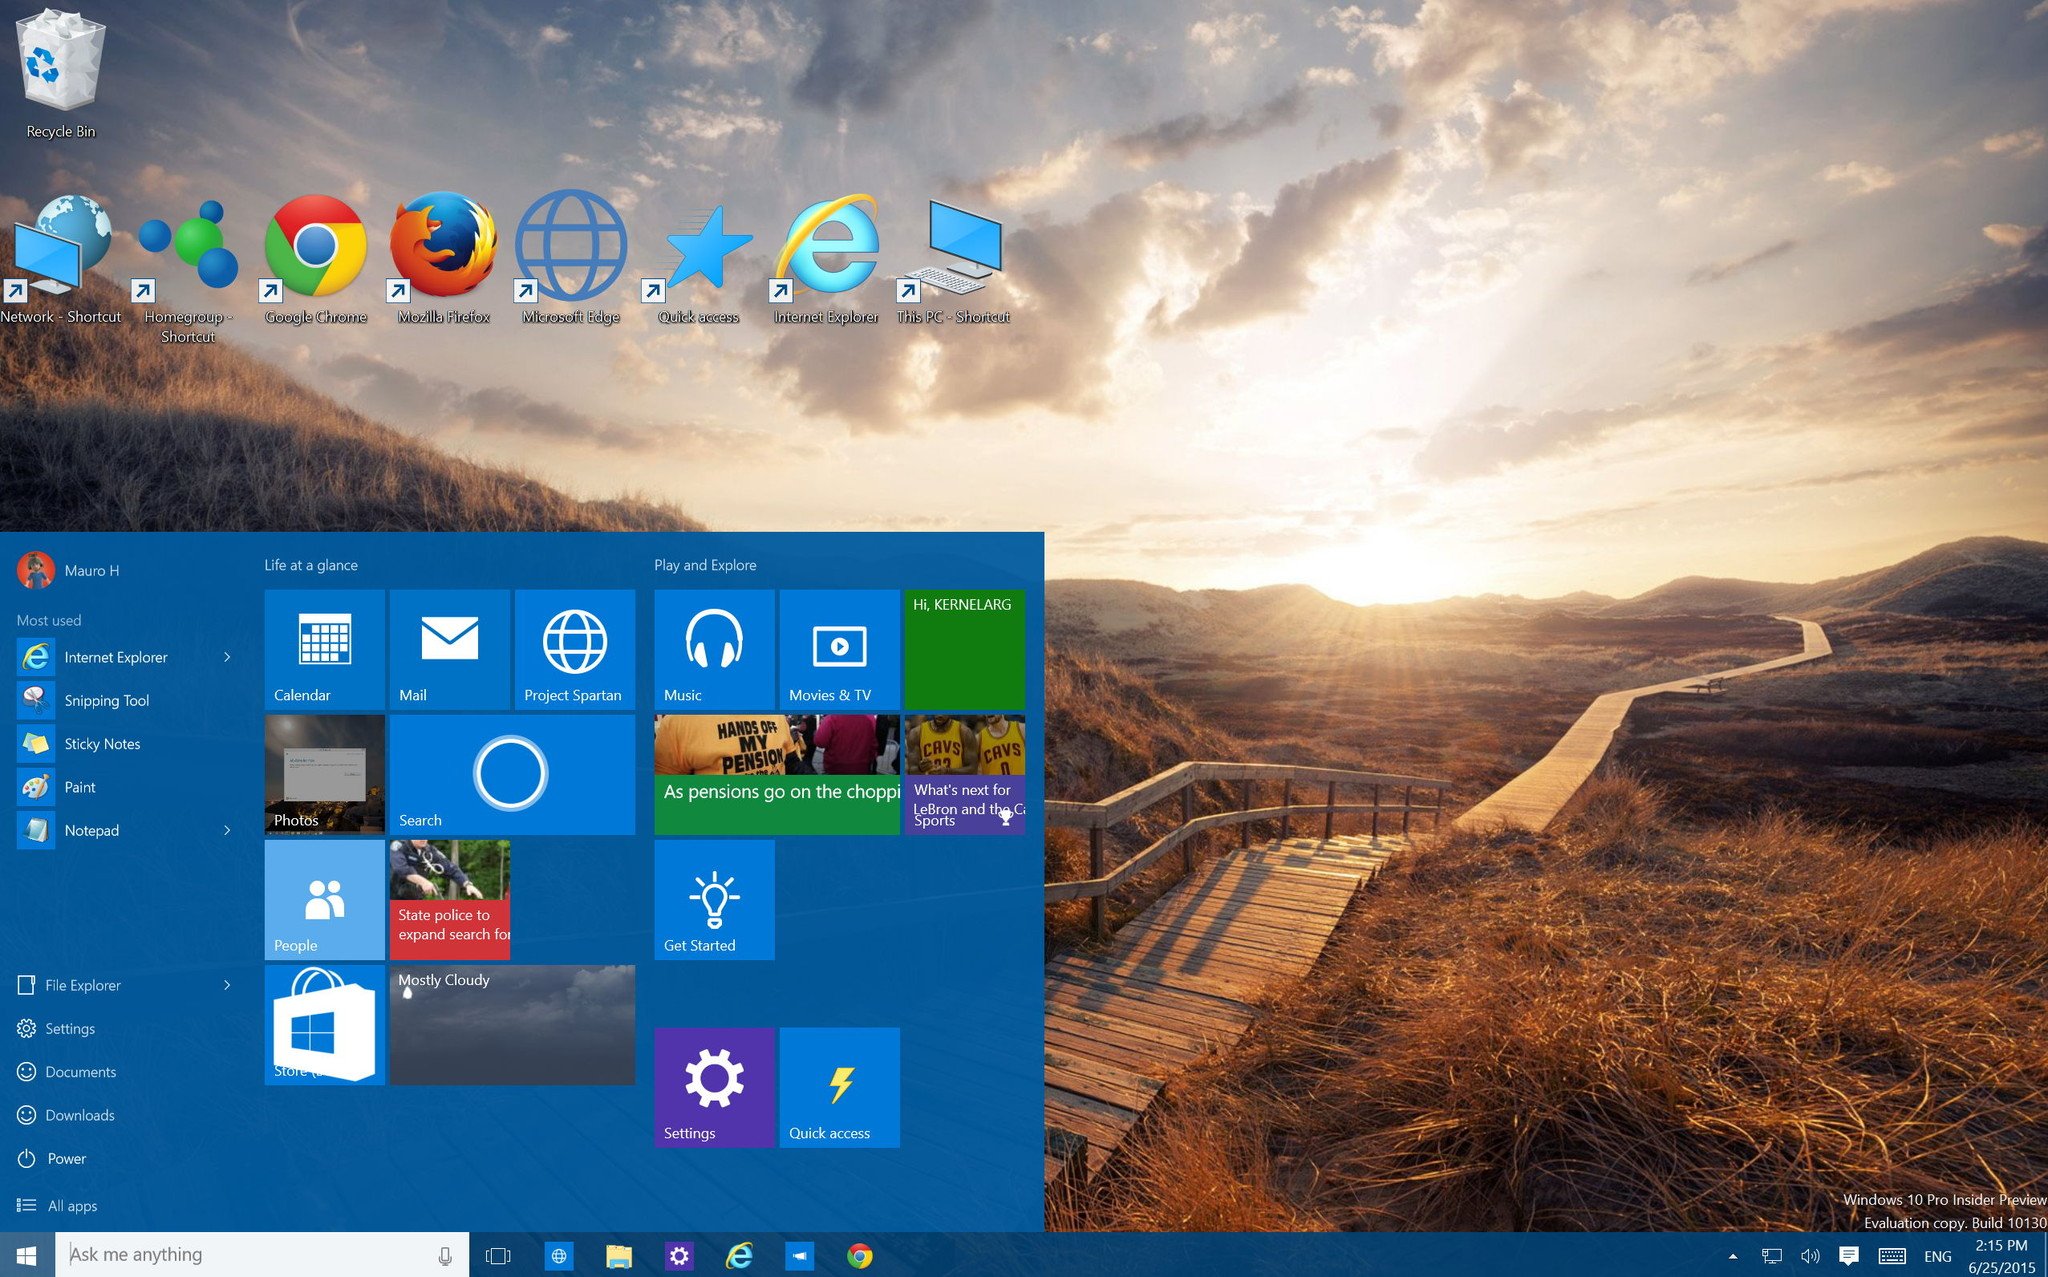 Cập nhật ngay Windows 10 và trải nghiệm những tính năng mới nhất của hệ điều hành này. Tác động mạnh mẽ hơn đến hiệu suất và tính năng bảo mật, Windows 10 sẽ mang lại cho bạn trải nghiệm sử dụng máy tính tuyệt vời hơn bao giờ hết. Bạn có muốn trải nghiệm sự khác biệt của Windows 10 không?